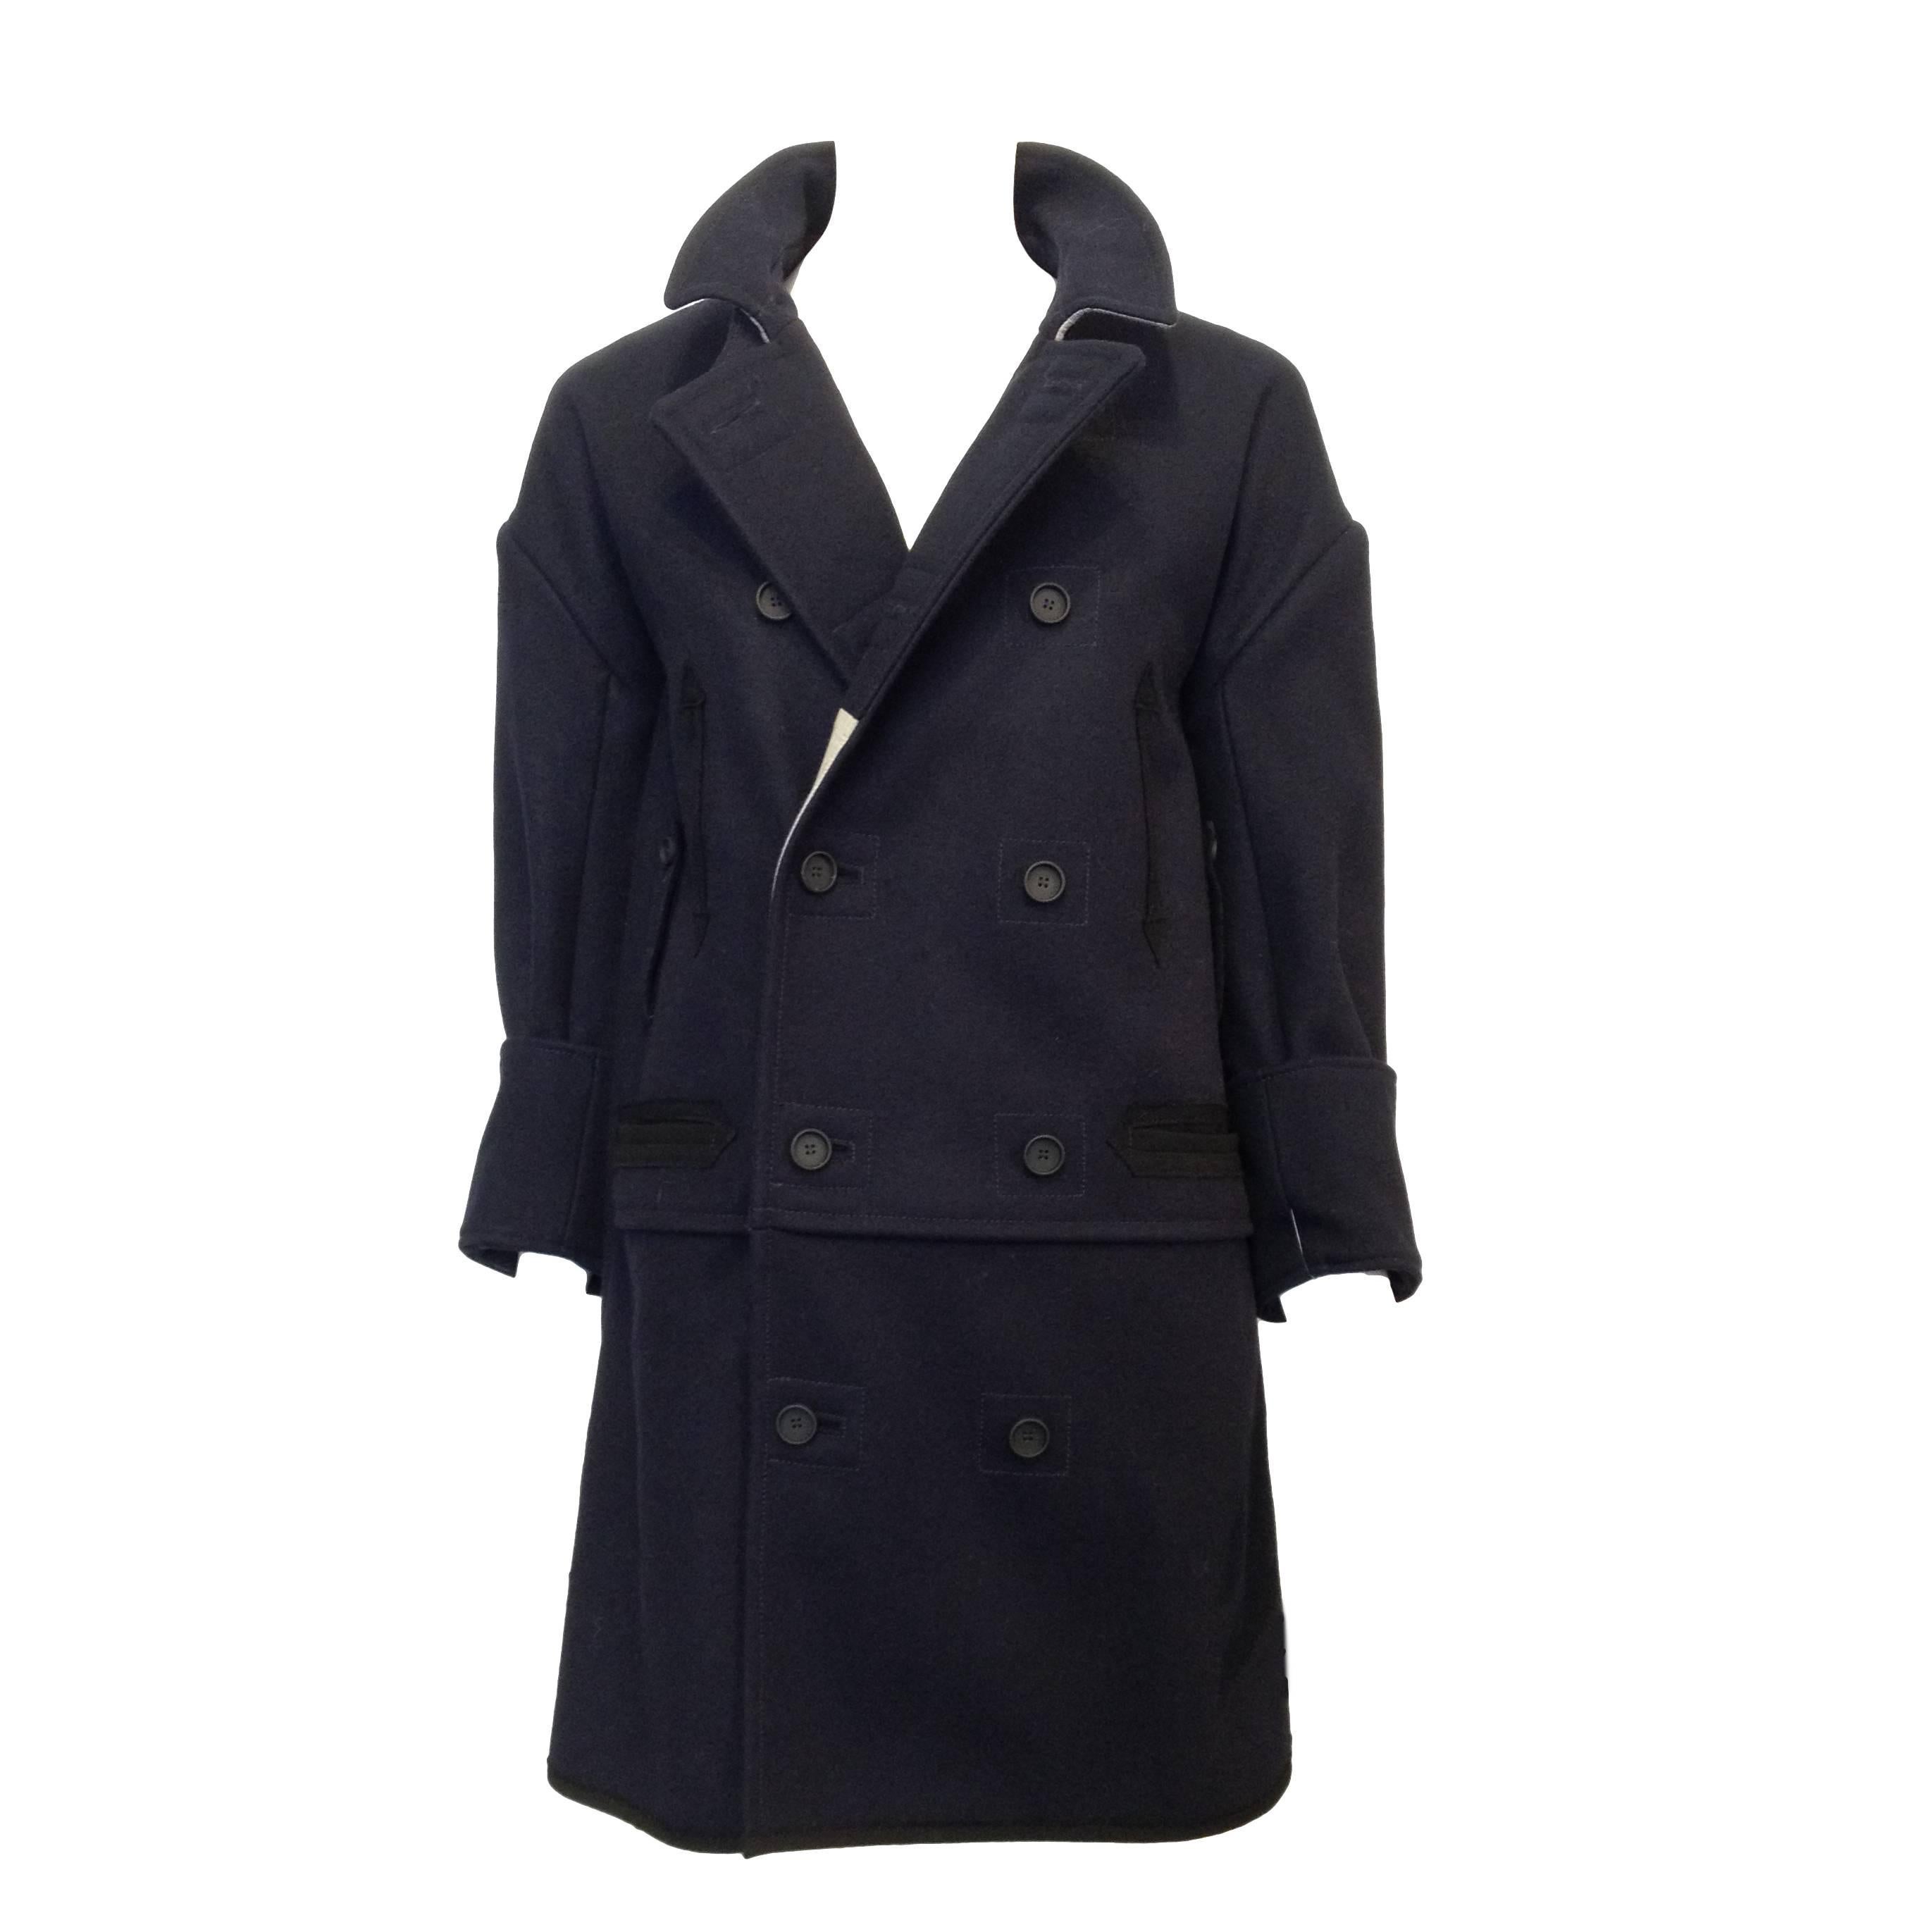 Balenciaga Navy Wool Coat Size 38 (6)